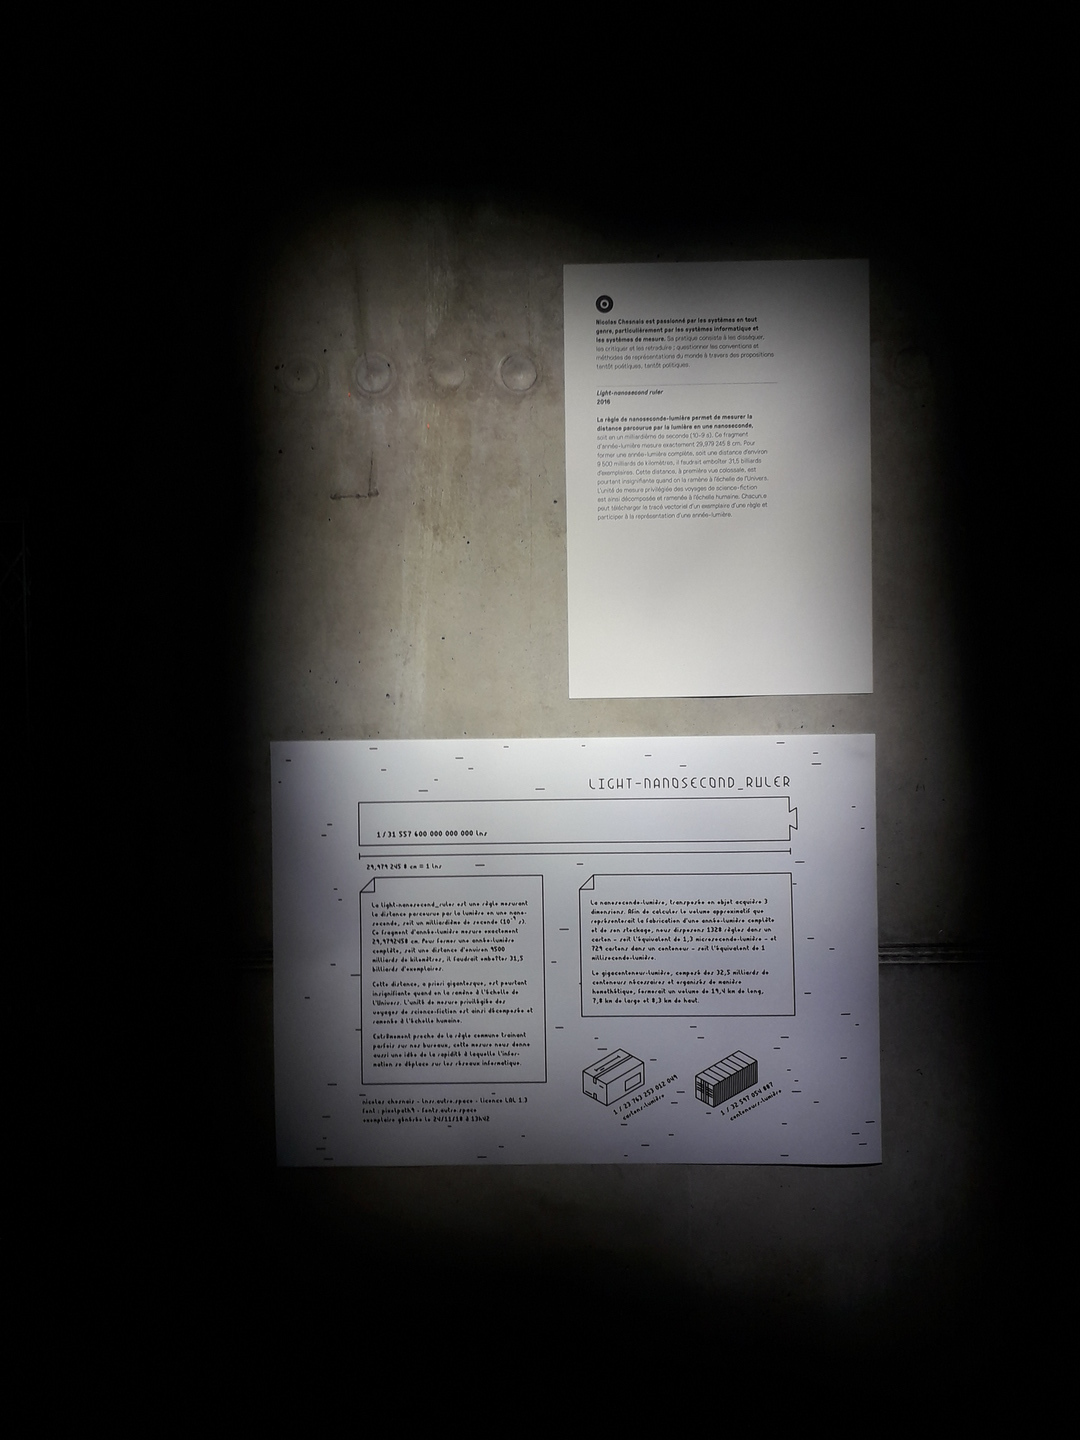 Image 2 : Documentation du projet relevée par un éclairage directionnel